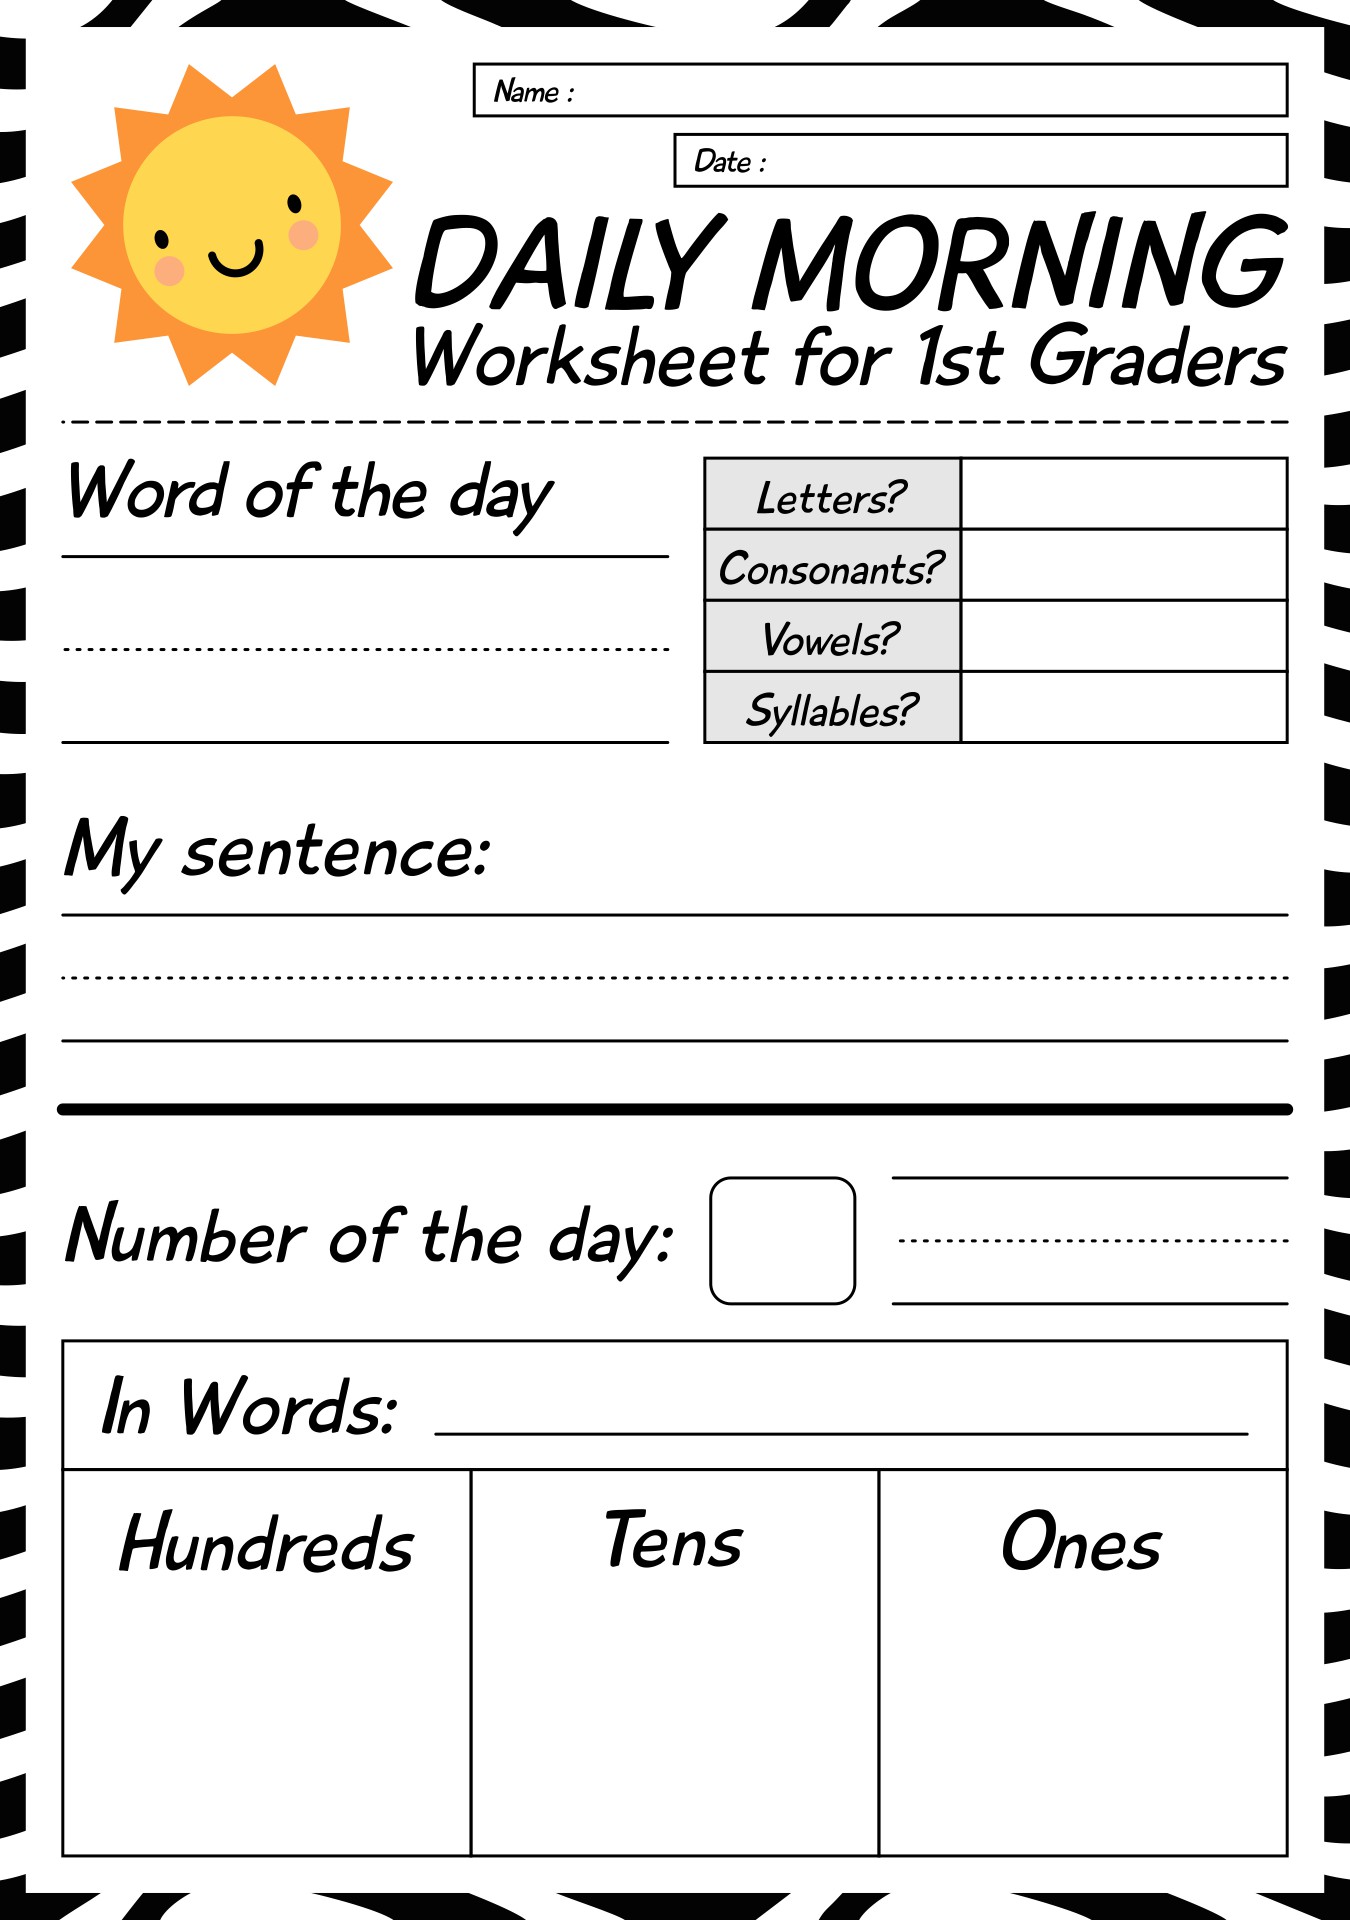 Daily Morning Worksheet for 1st Graders